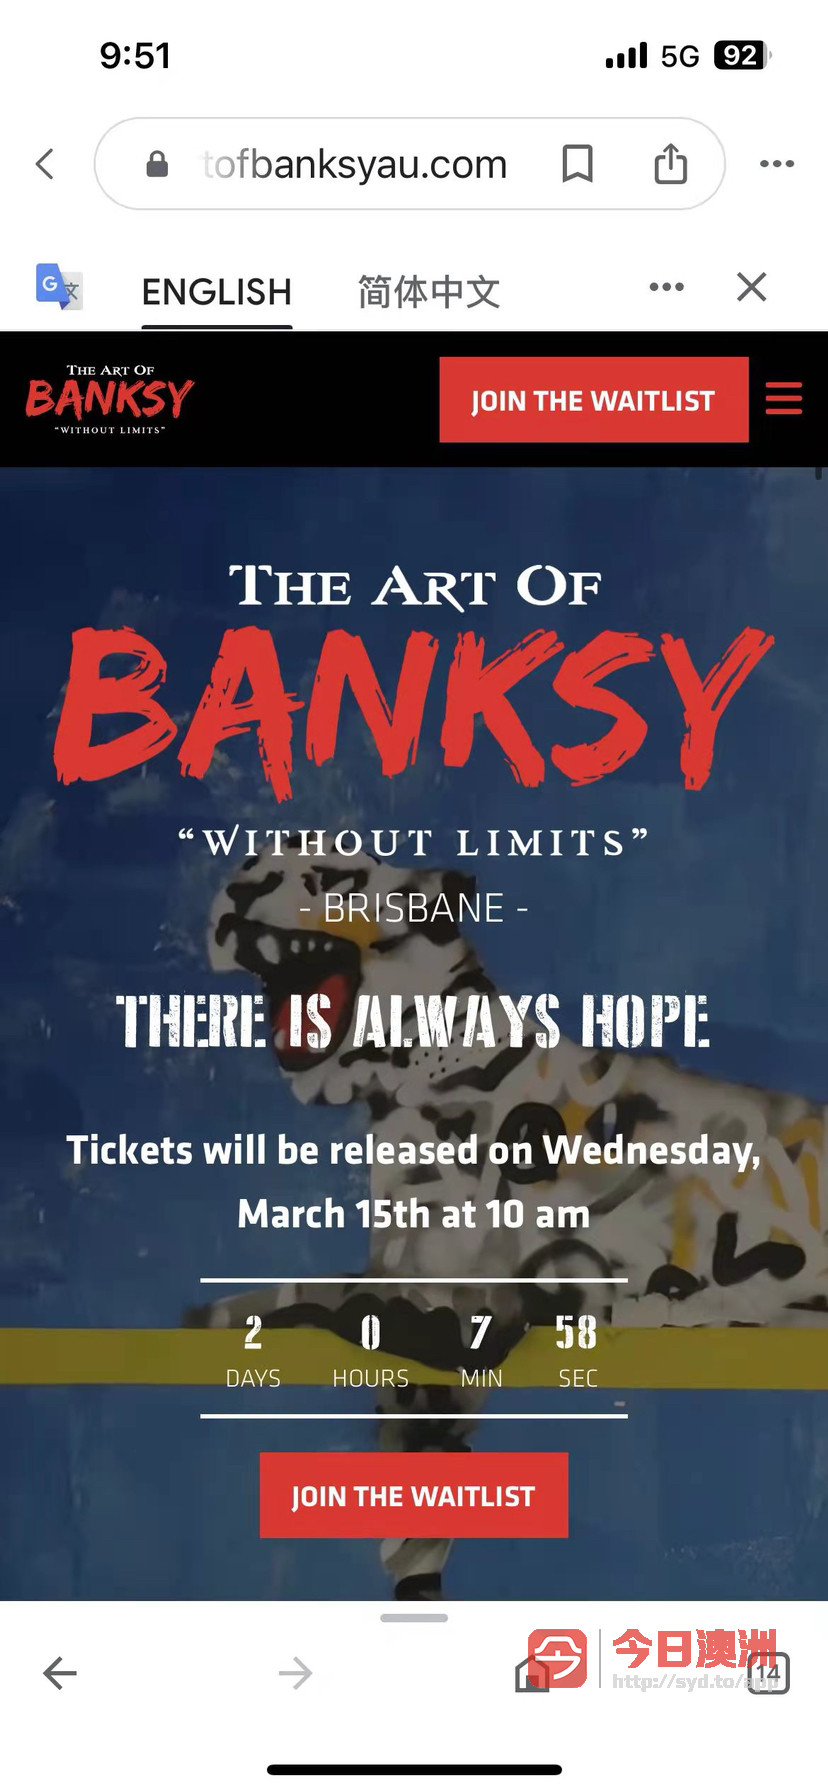 转让一张5月7日星期天下午艺术家班克西你艺术展览门票